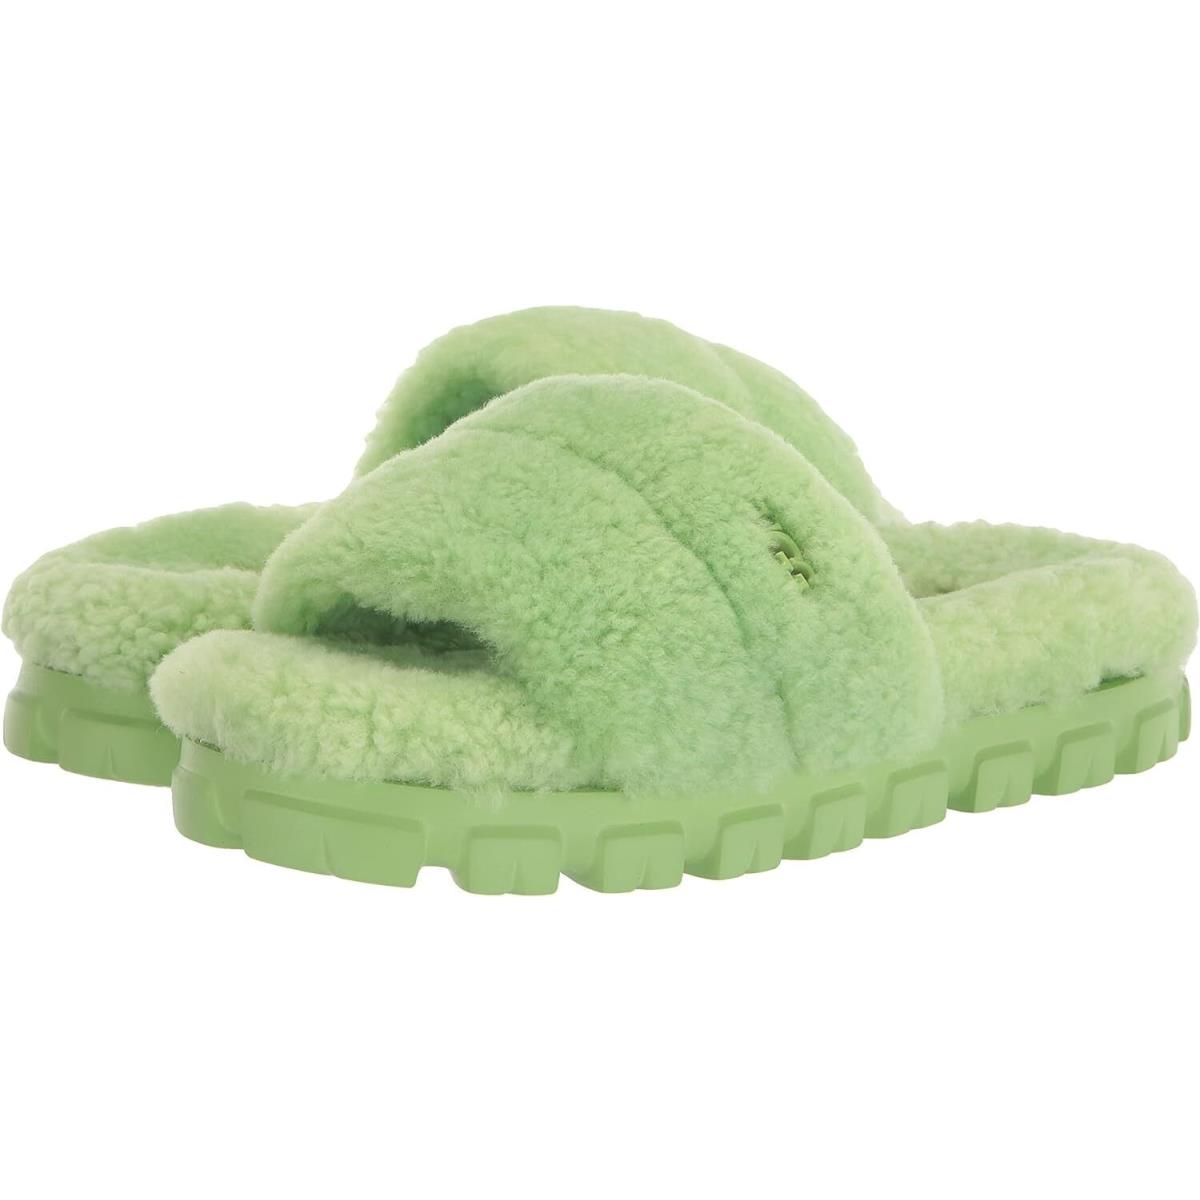 Women`s Shoes Ugg Cozetta Curly Slipper Slide Sandals 1130838 Parakeet Green - Green